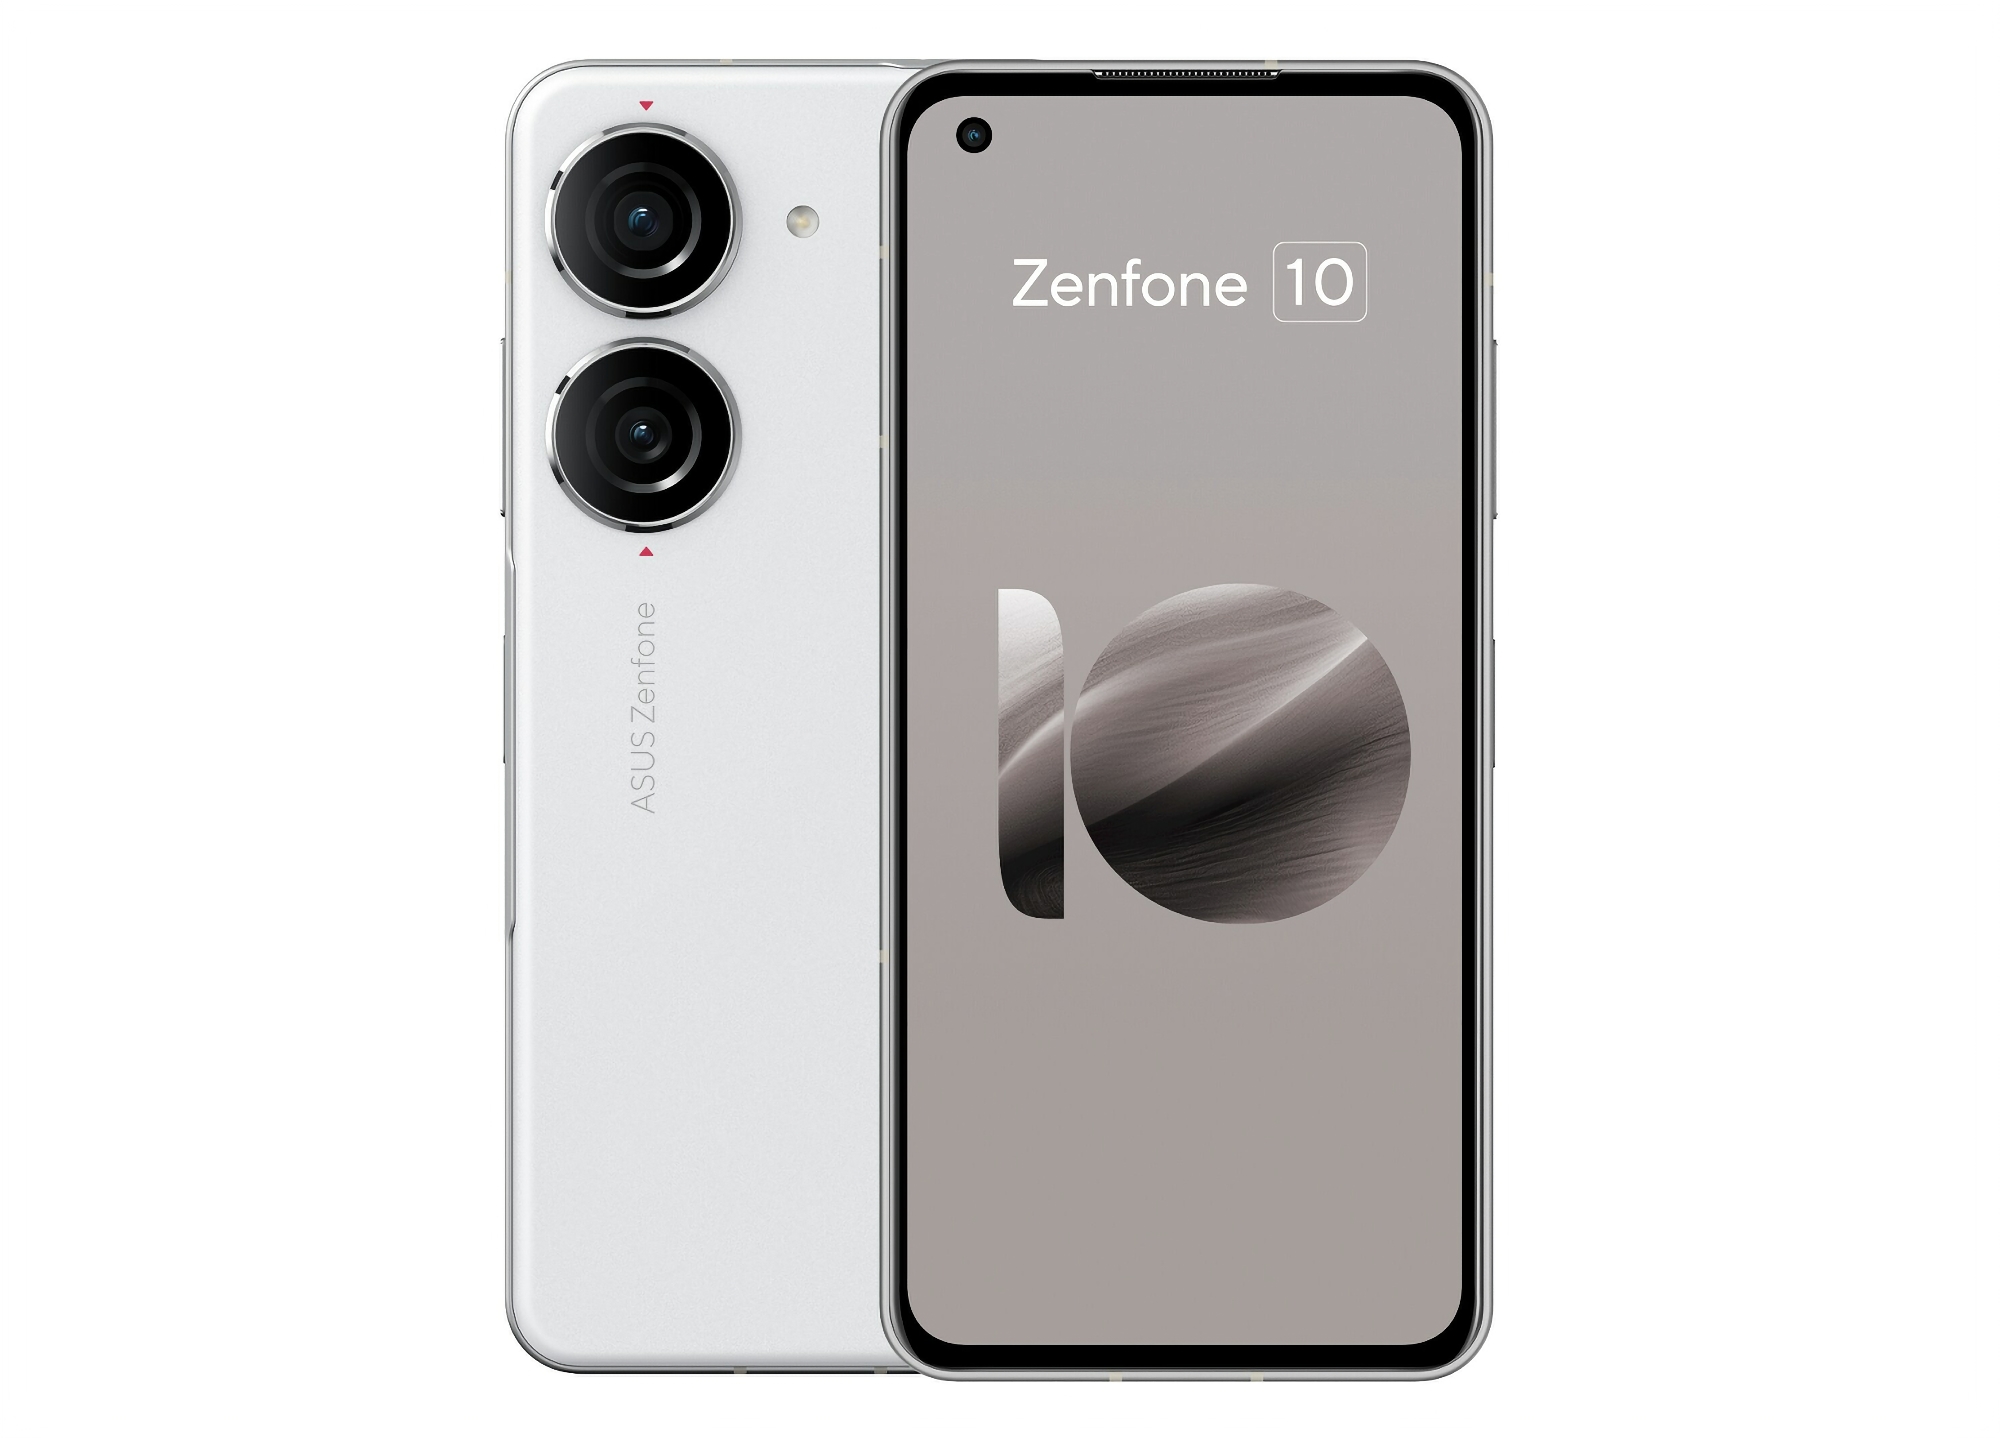 Insider reveals look, specs and price of ASUS Zenfone 10 smartphone